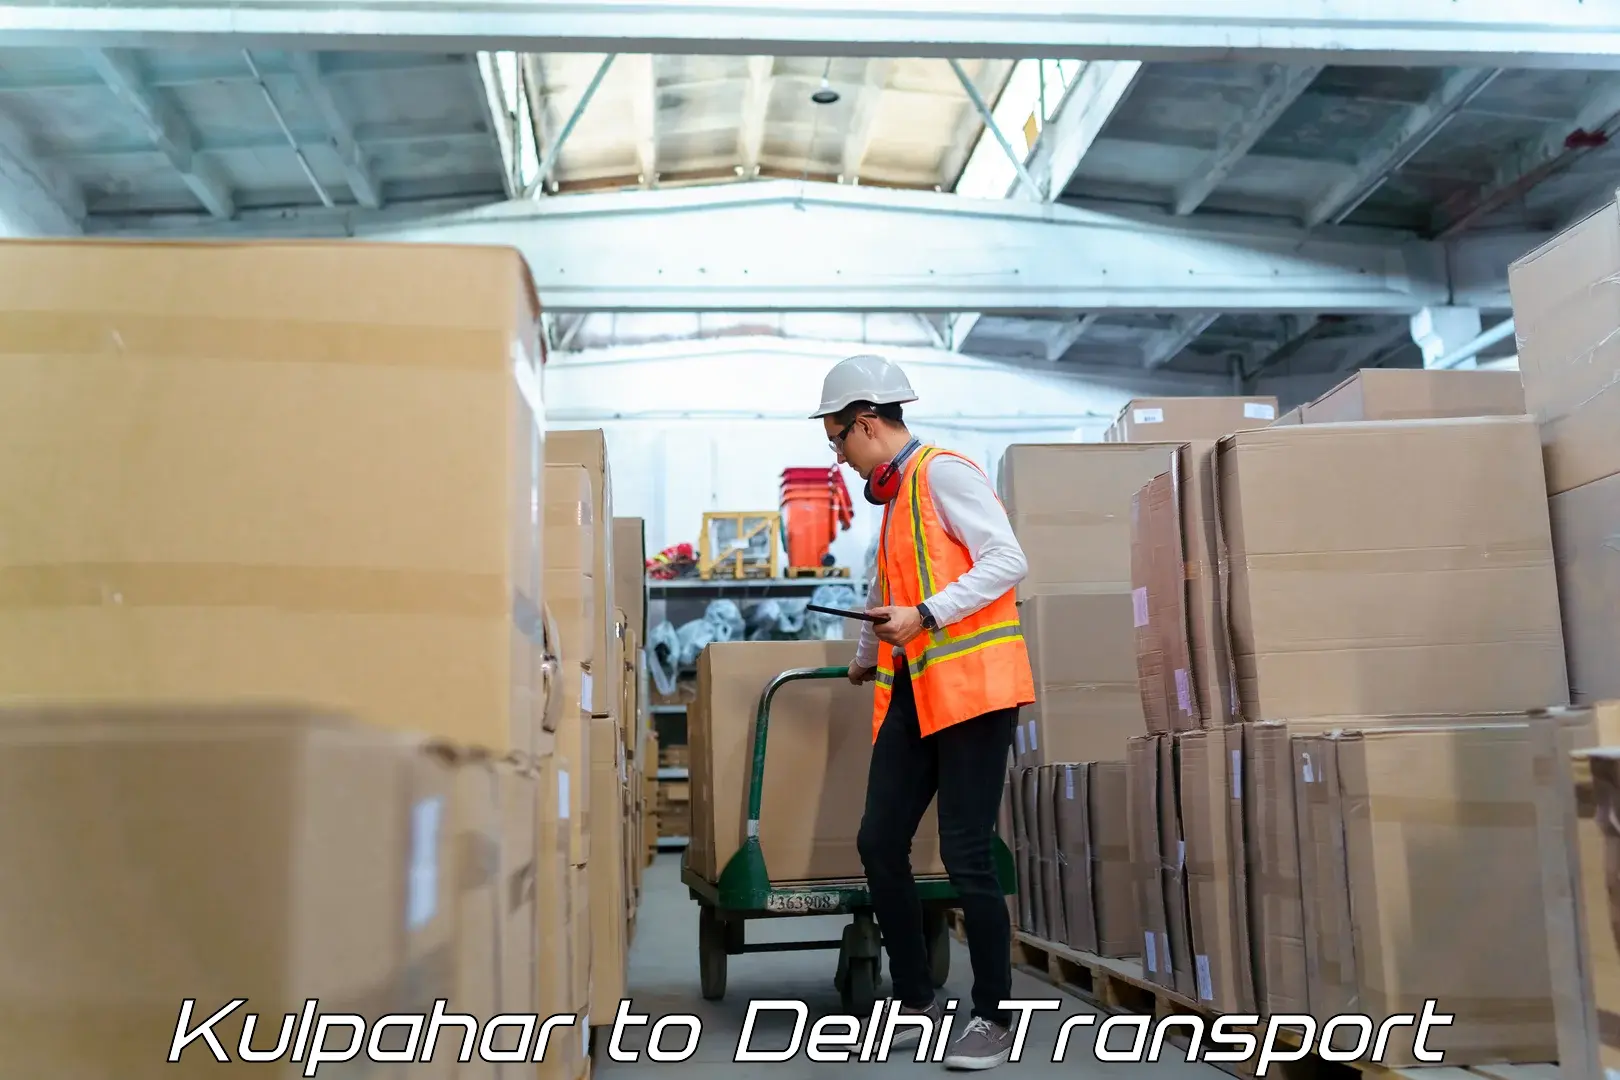 Lorry transport service Kulpahar to NCR